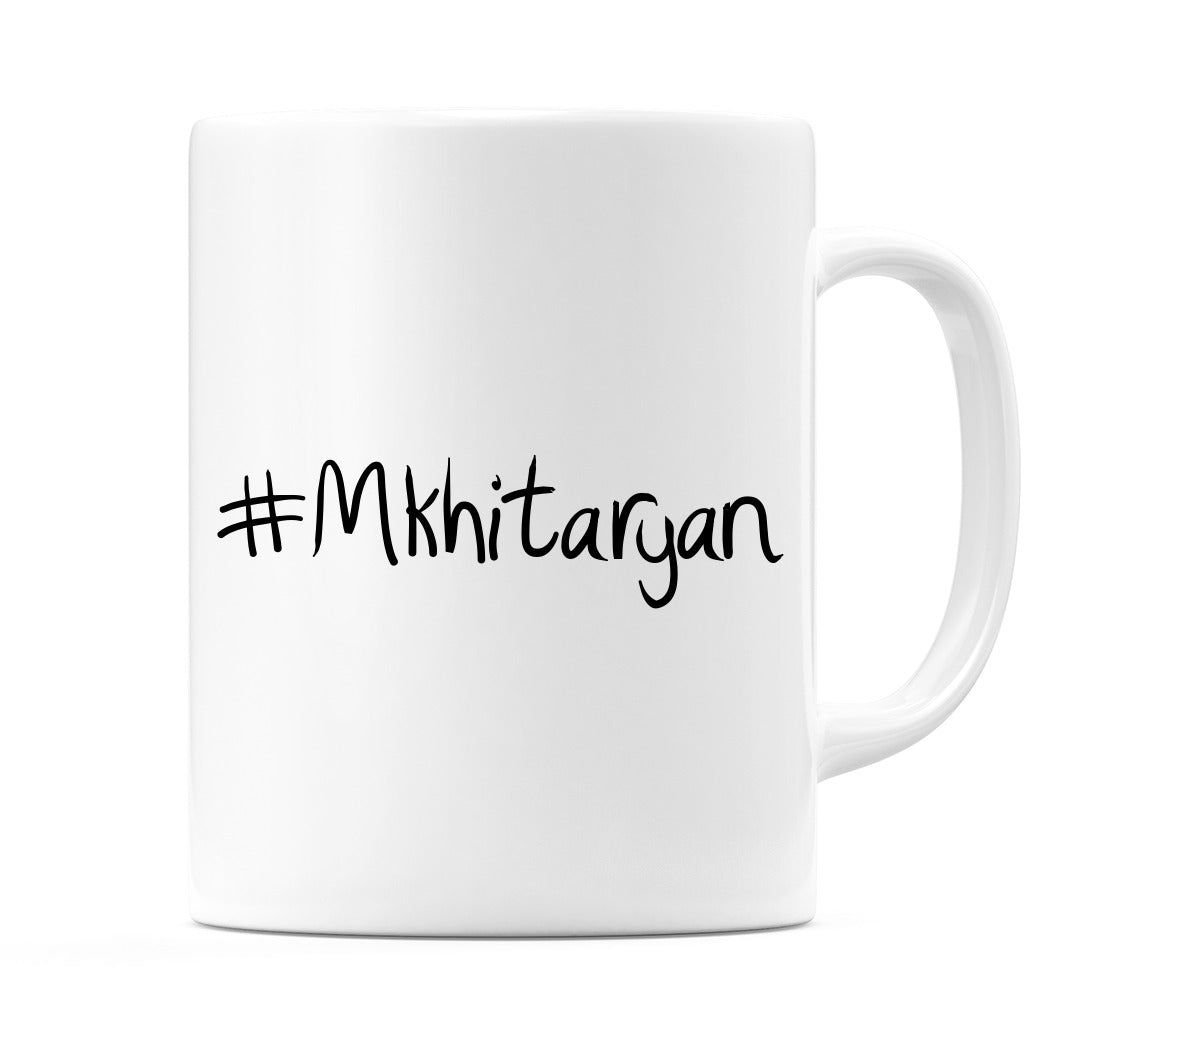 #Mkhitaryan Mug